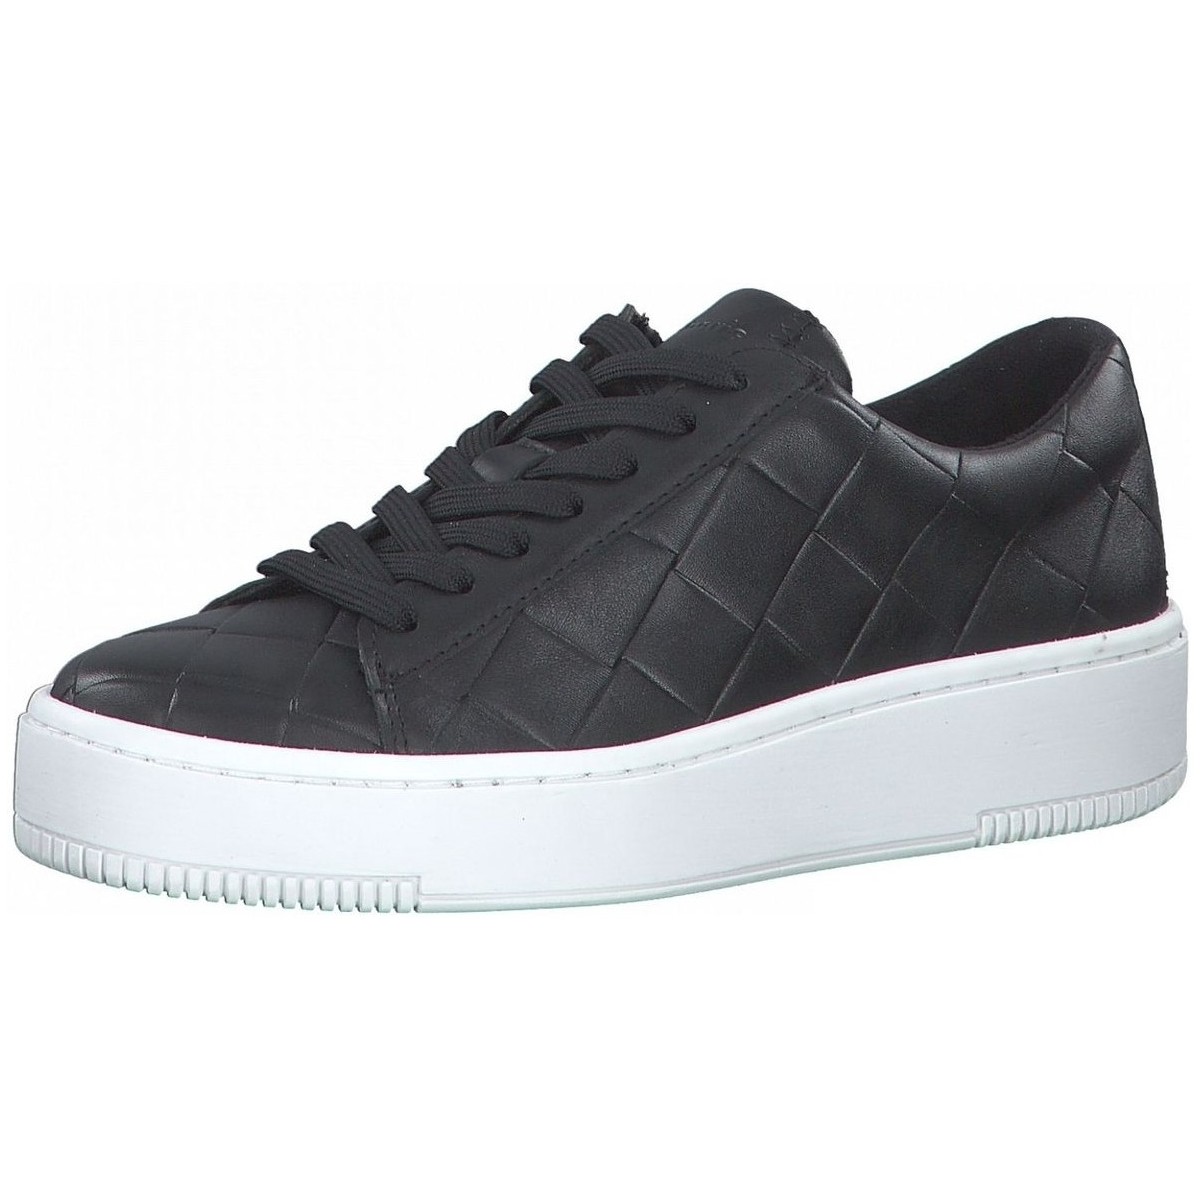 Παπούτσια Γυναίκα Sneakers Tamaris 23796 Black